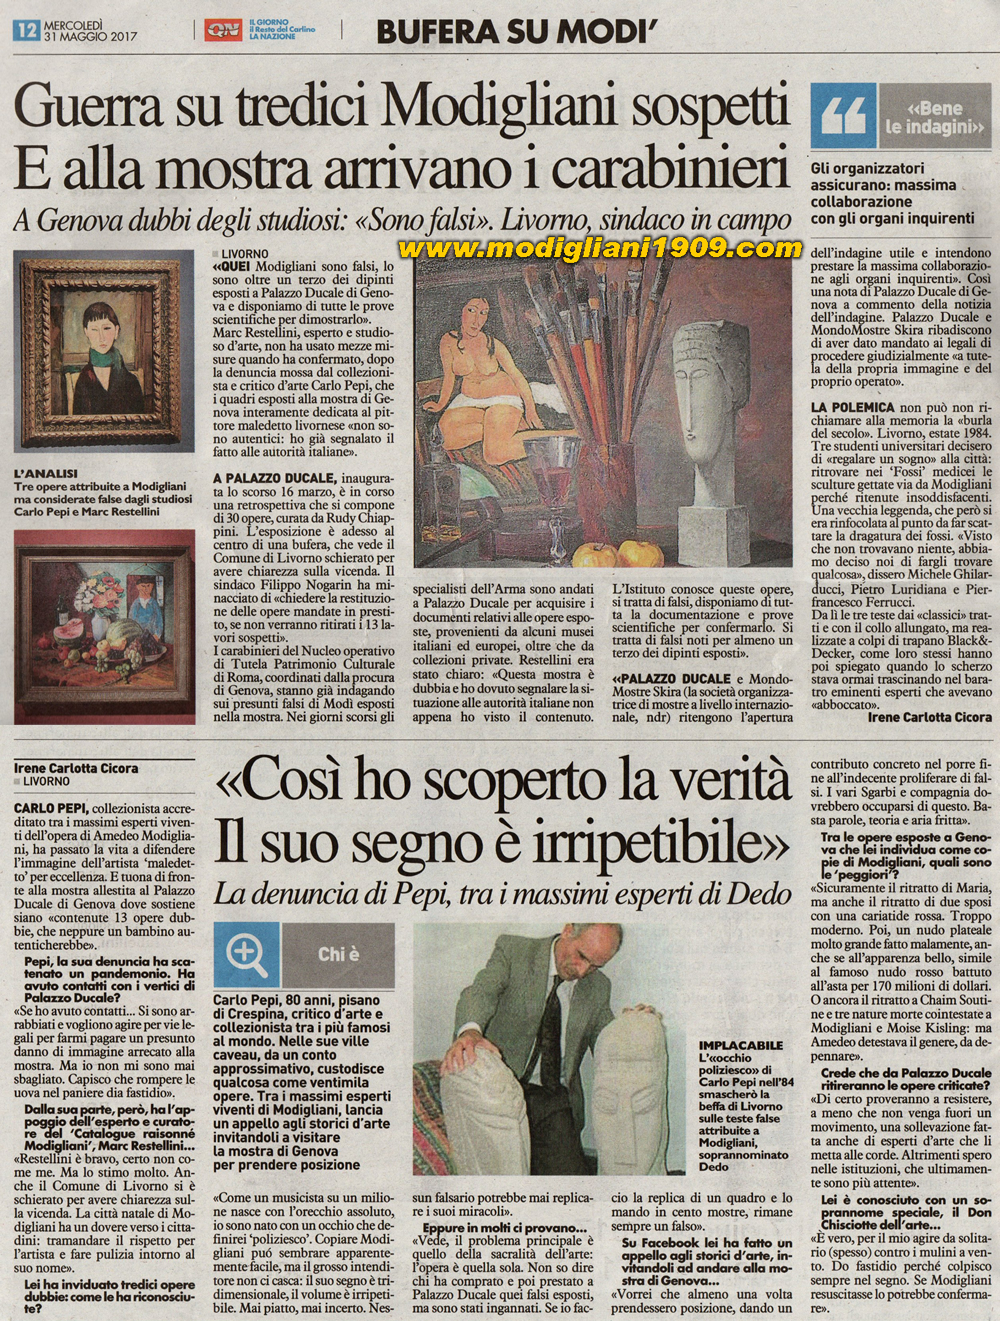 Guerra sui 13 Modigliani sospetti - E alla mostra di Genova arrivano i carabinieri